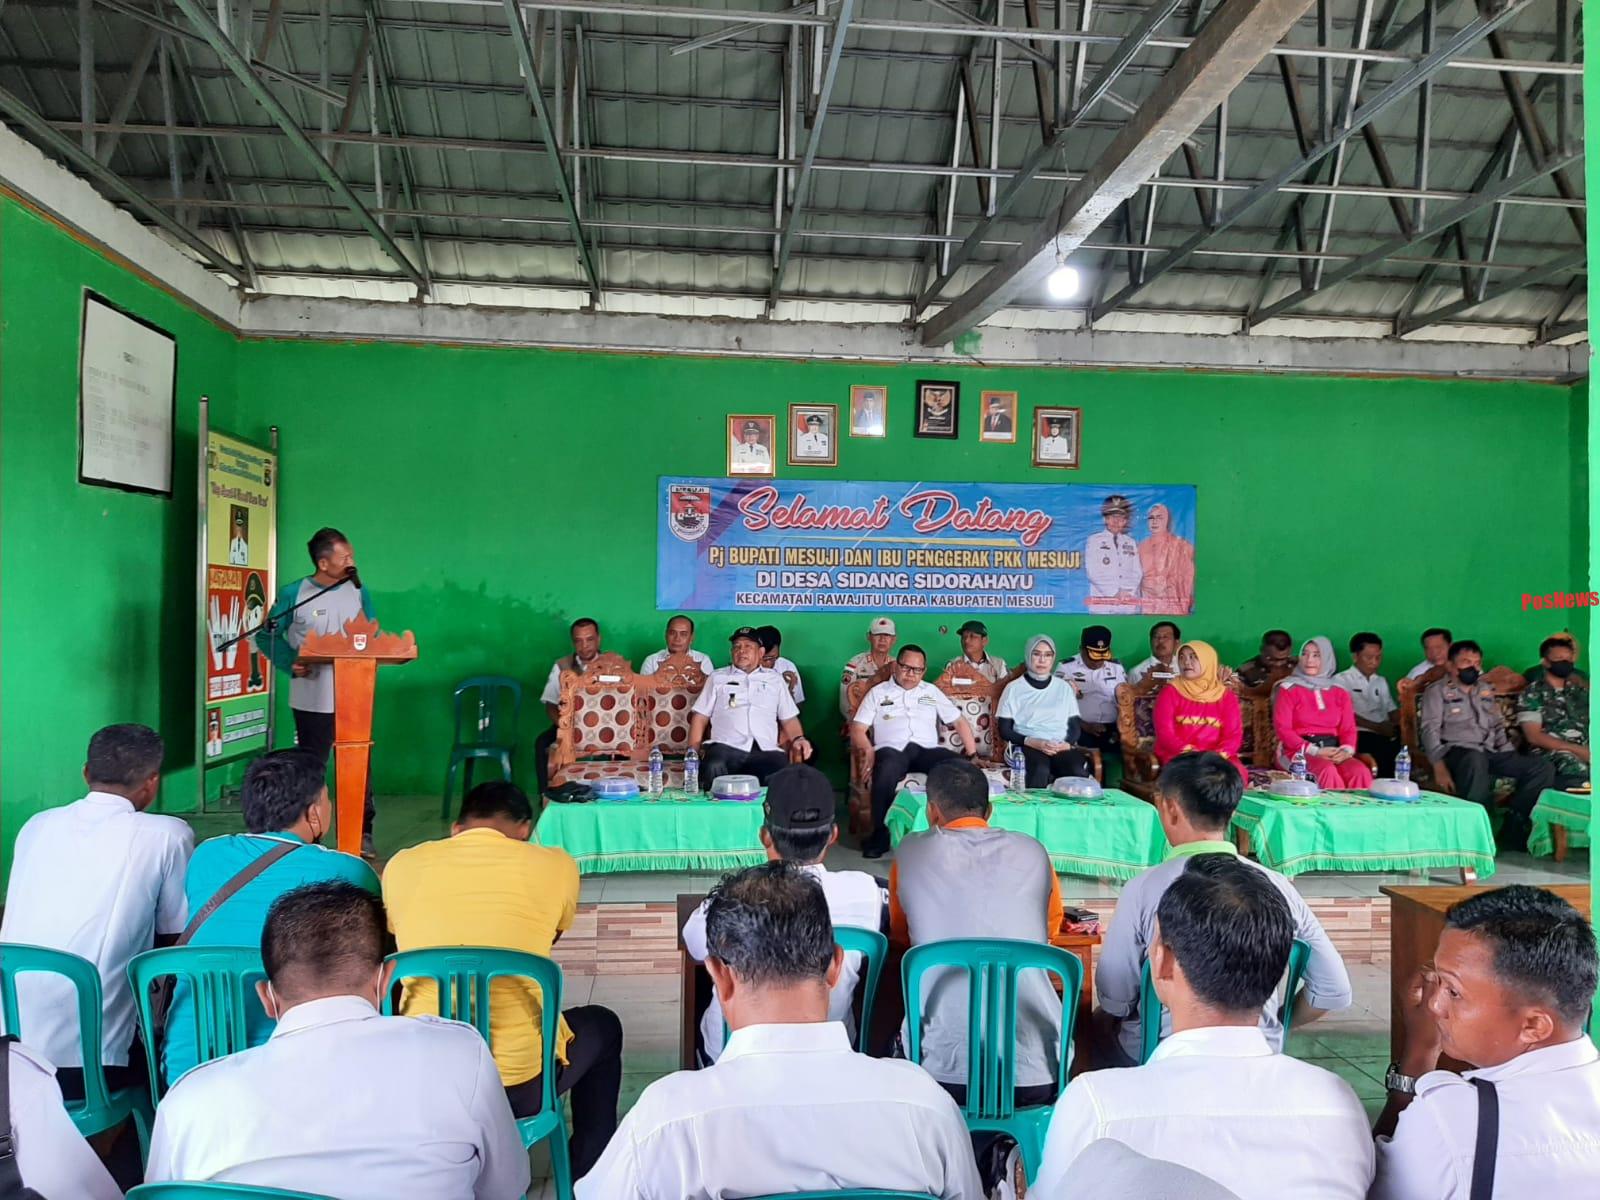 Sambutan Hangat Dari Seluruh Kepala desa Kecamatan RJU Untuk Pj Bupati Mesuji Drs.Sulpakar M.M